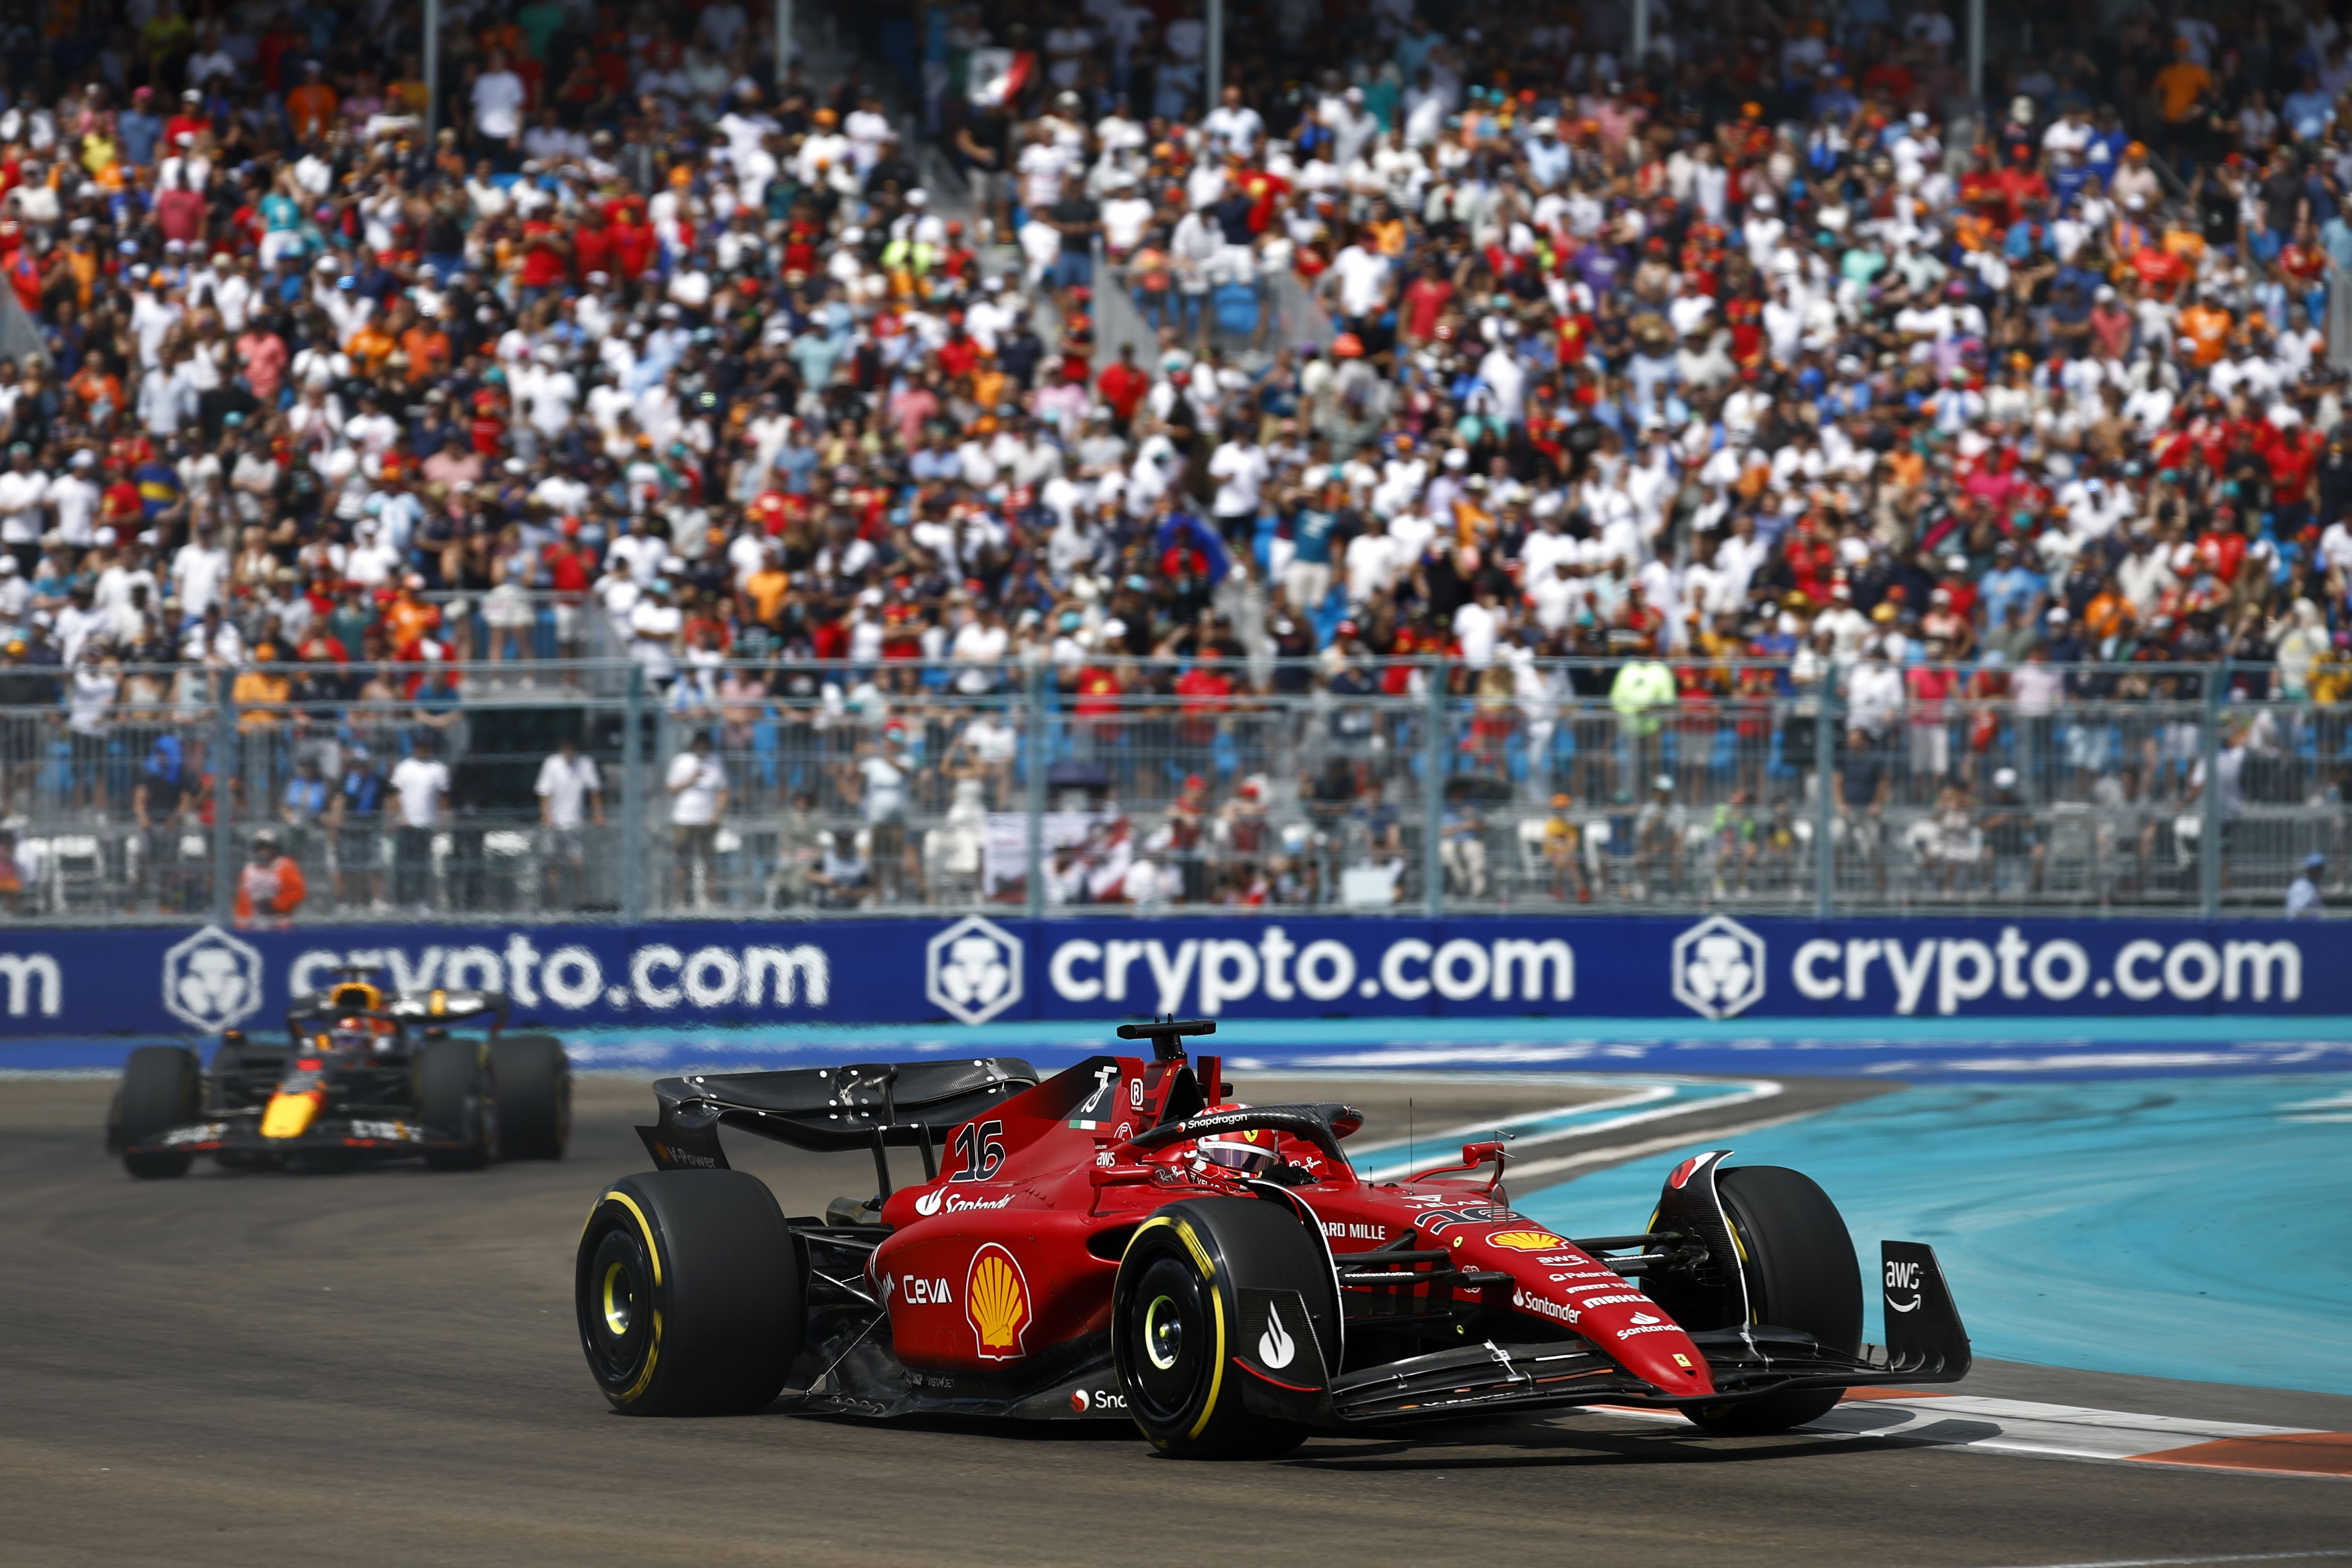 F1 Miami Grand Prix Proved to Be More Monaco, Less Misery